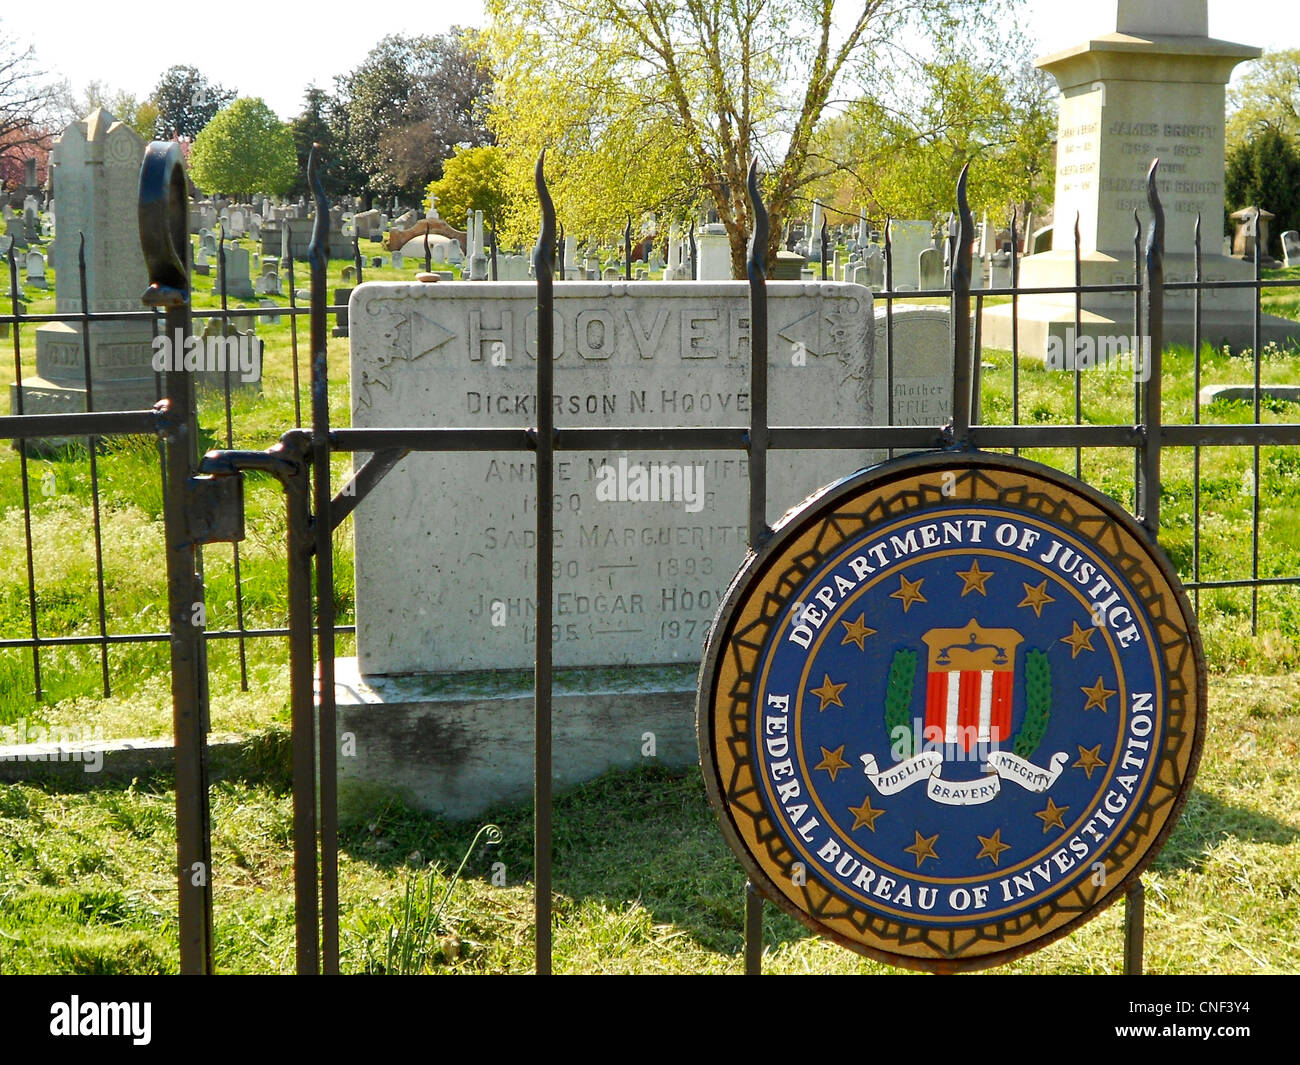 Tumba familiar como J. Edgar Hoover (inferior) en el cementerio del Congreso, Washington, D.C. Foto de stock